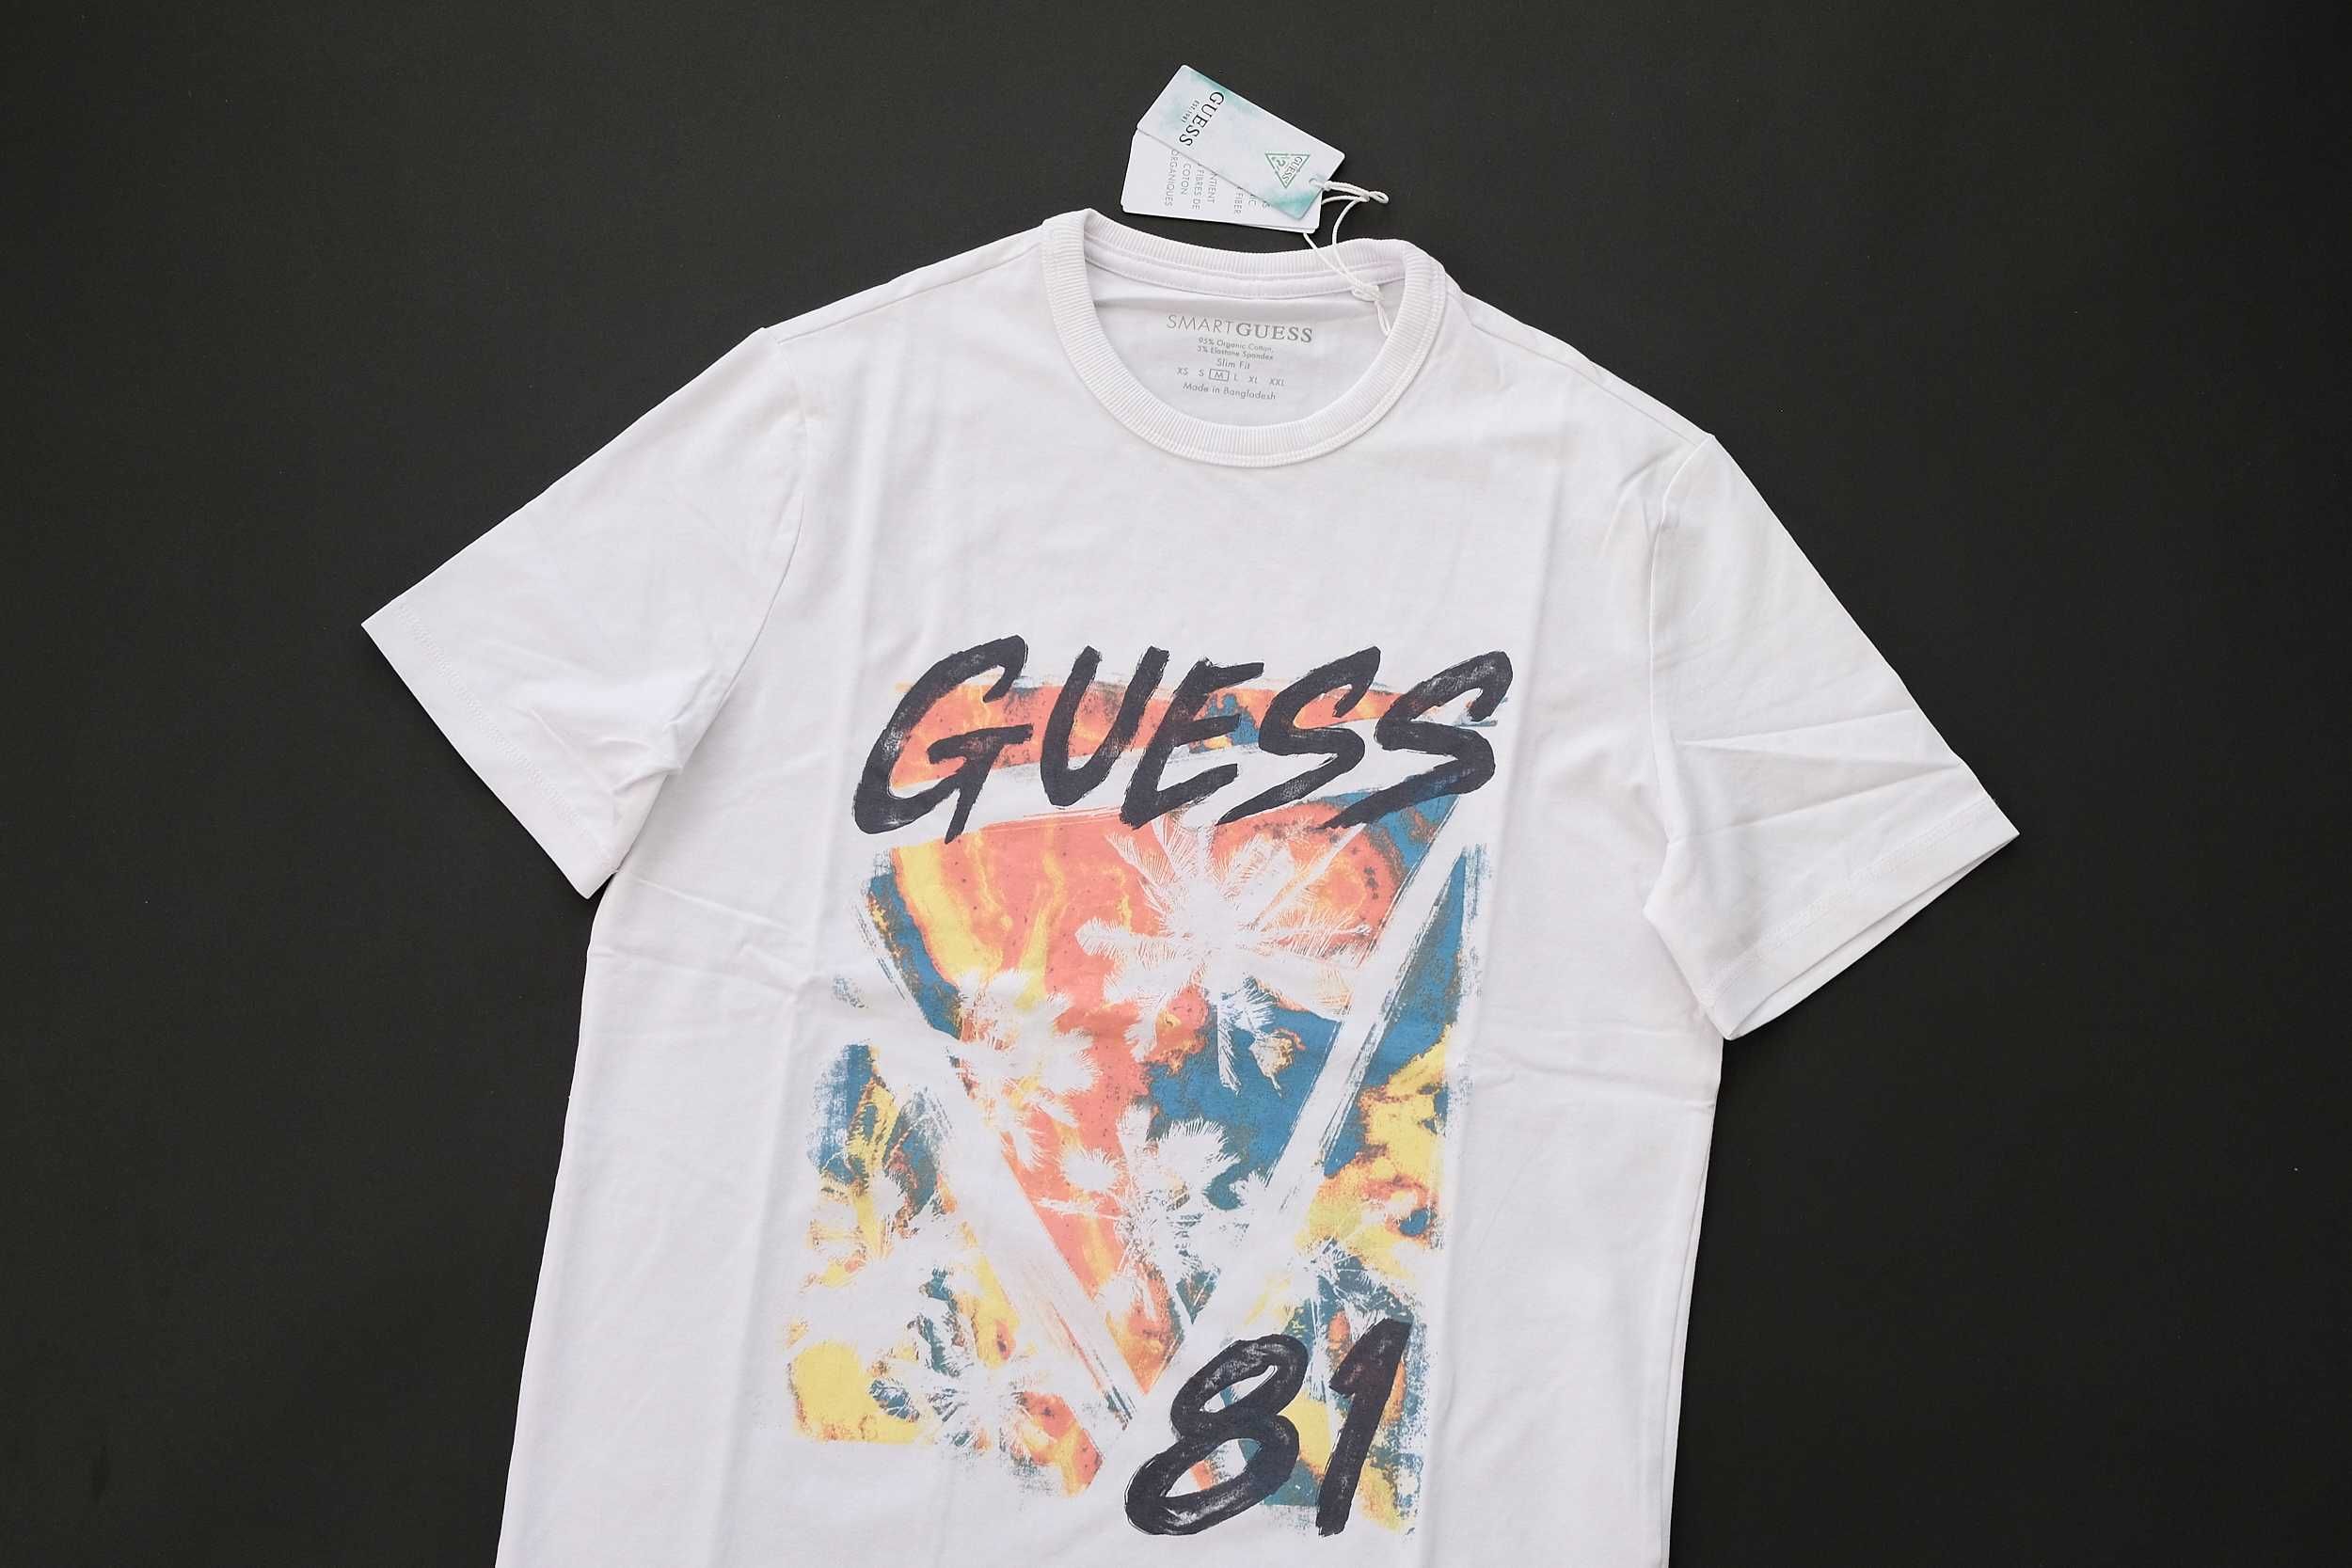 ПРОМО GUESS S размер-Оригинална бяла мъжка тениска с палми